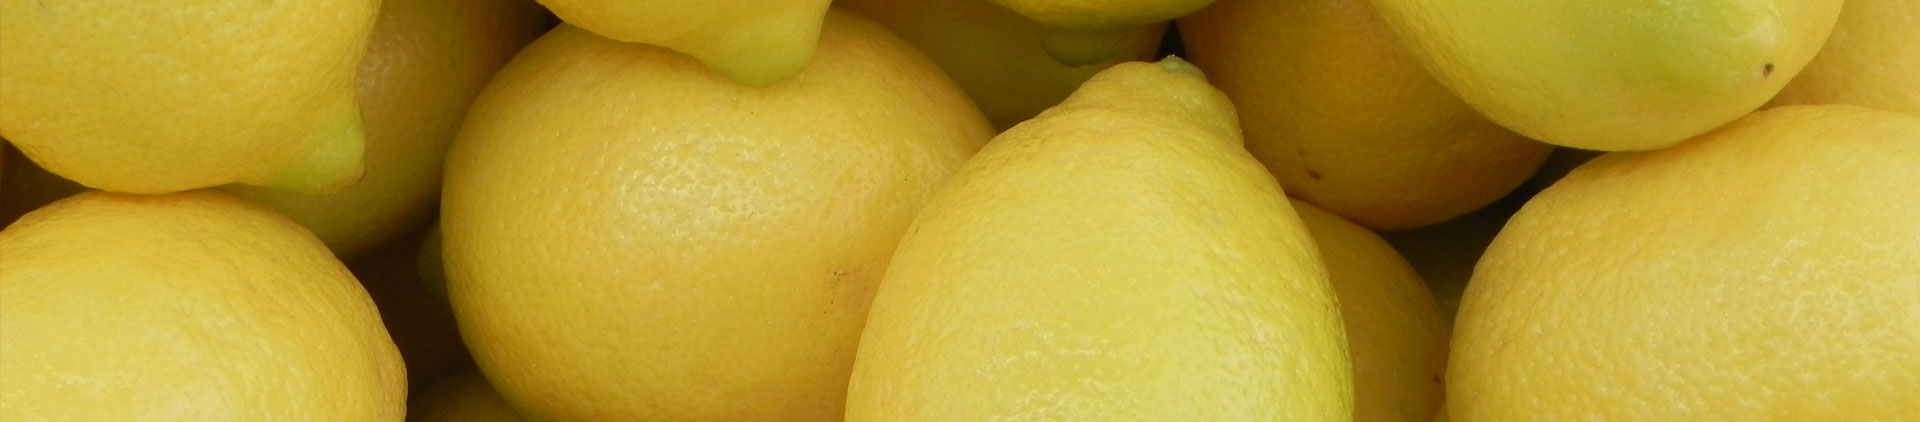 Chilean Lemons